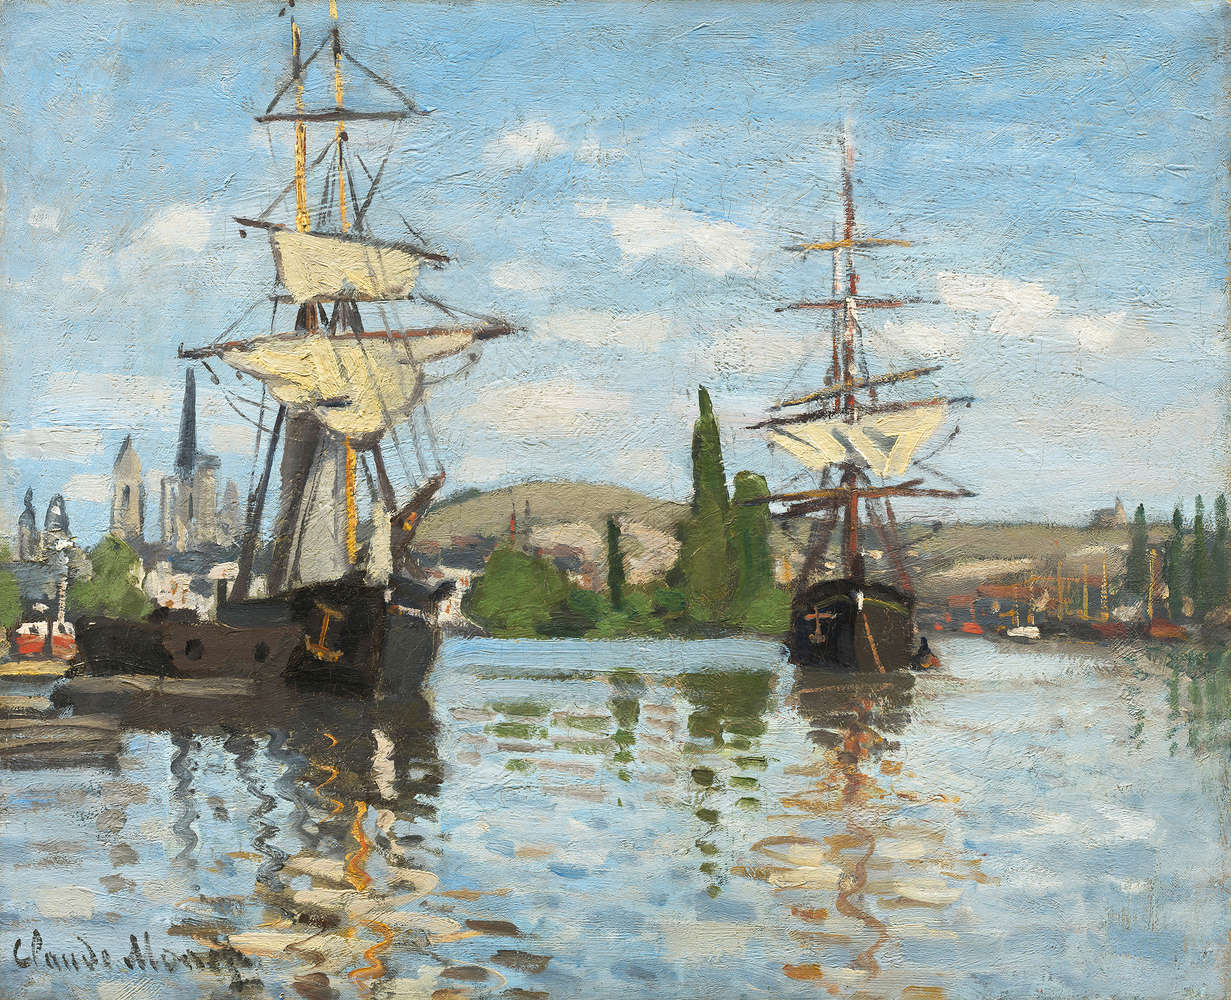             Fototapete "Schiffe fahren auf der Seine bei Rouen" von Claude Monet
        